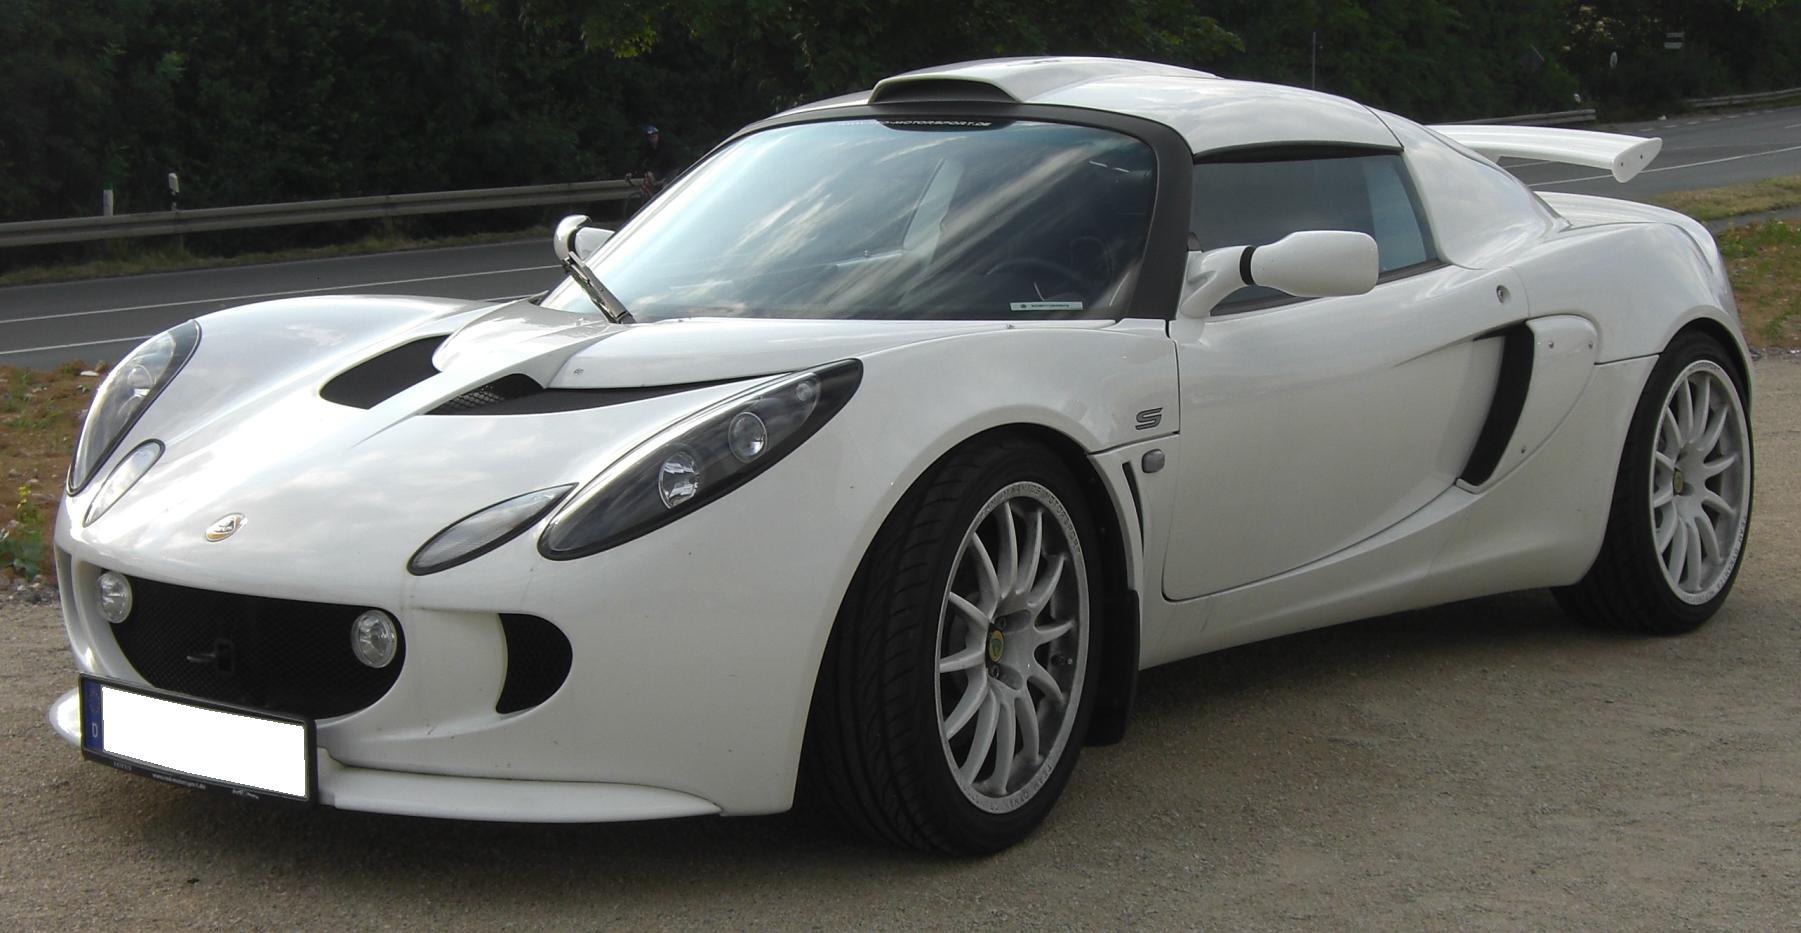 Corvette ZR1 Lotus Exige, Concept Car Lotus Exige, Lotus Exige...